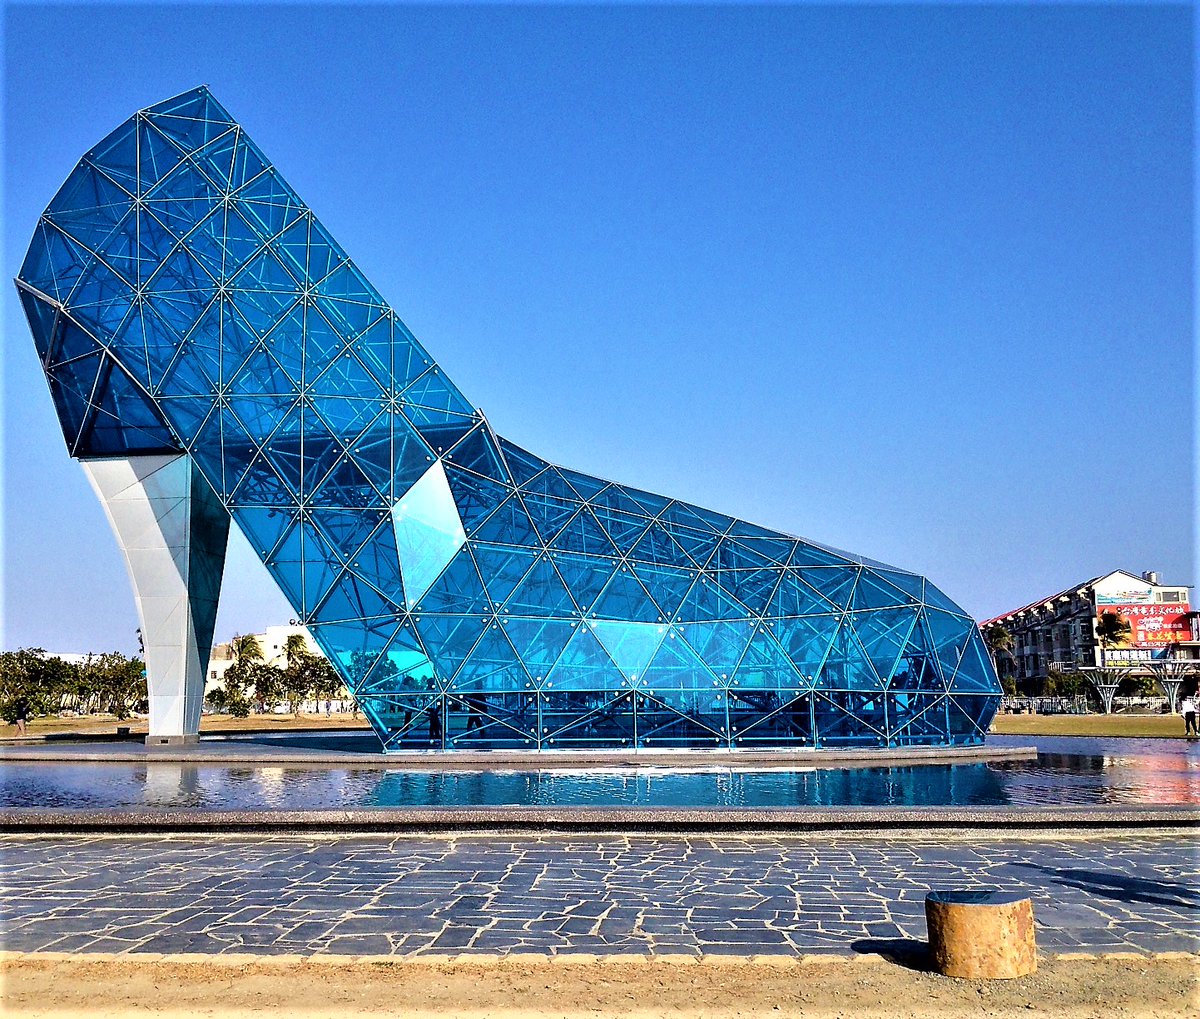 Iglesia nupcial en Chiayi, Taiwan.La maravillosa insensatez que supone construir una iglesia con forma de zapato de tacón de cristal. 27 metros de largo por 18 de alto de vidrio tintado en azul y sujeto con pernos a una estructura tridimensional de acero. Precioso.